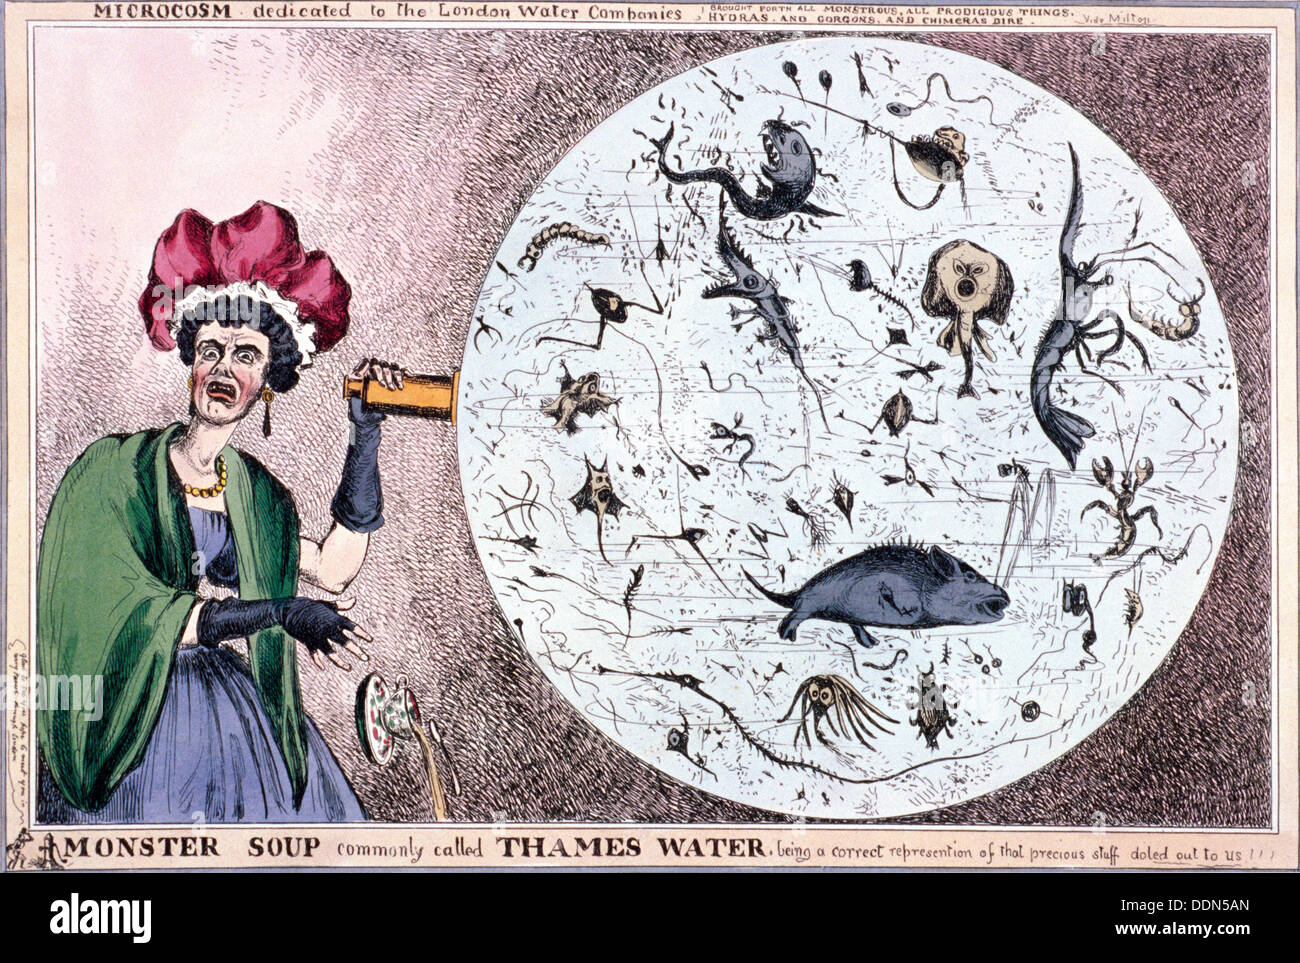 Soupe 'Monster communément appelée Thames Water...', 1828. Artiste : Thomas McLean Banque D'Images